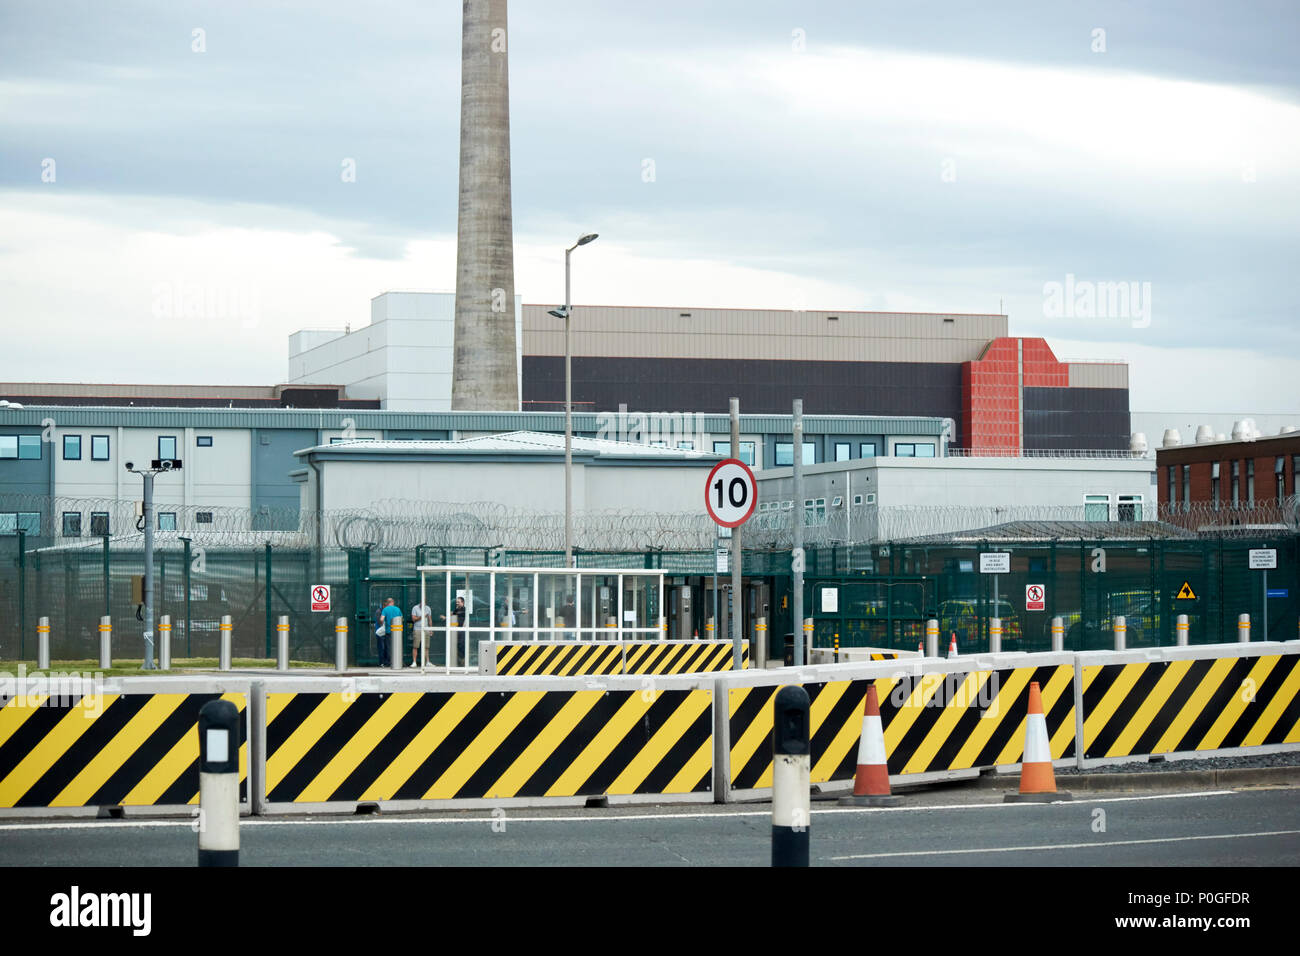 La sécurité à l'entrée de retraitement de combustible nucléaire de Sellafield et démantèlement nucléaire site dans Cumbria England UK Banque D'Images